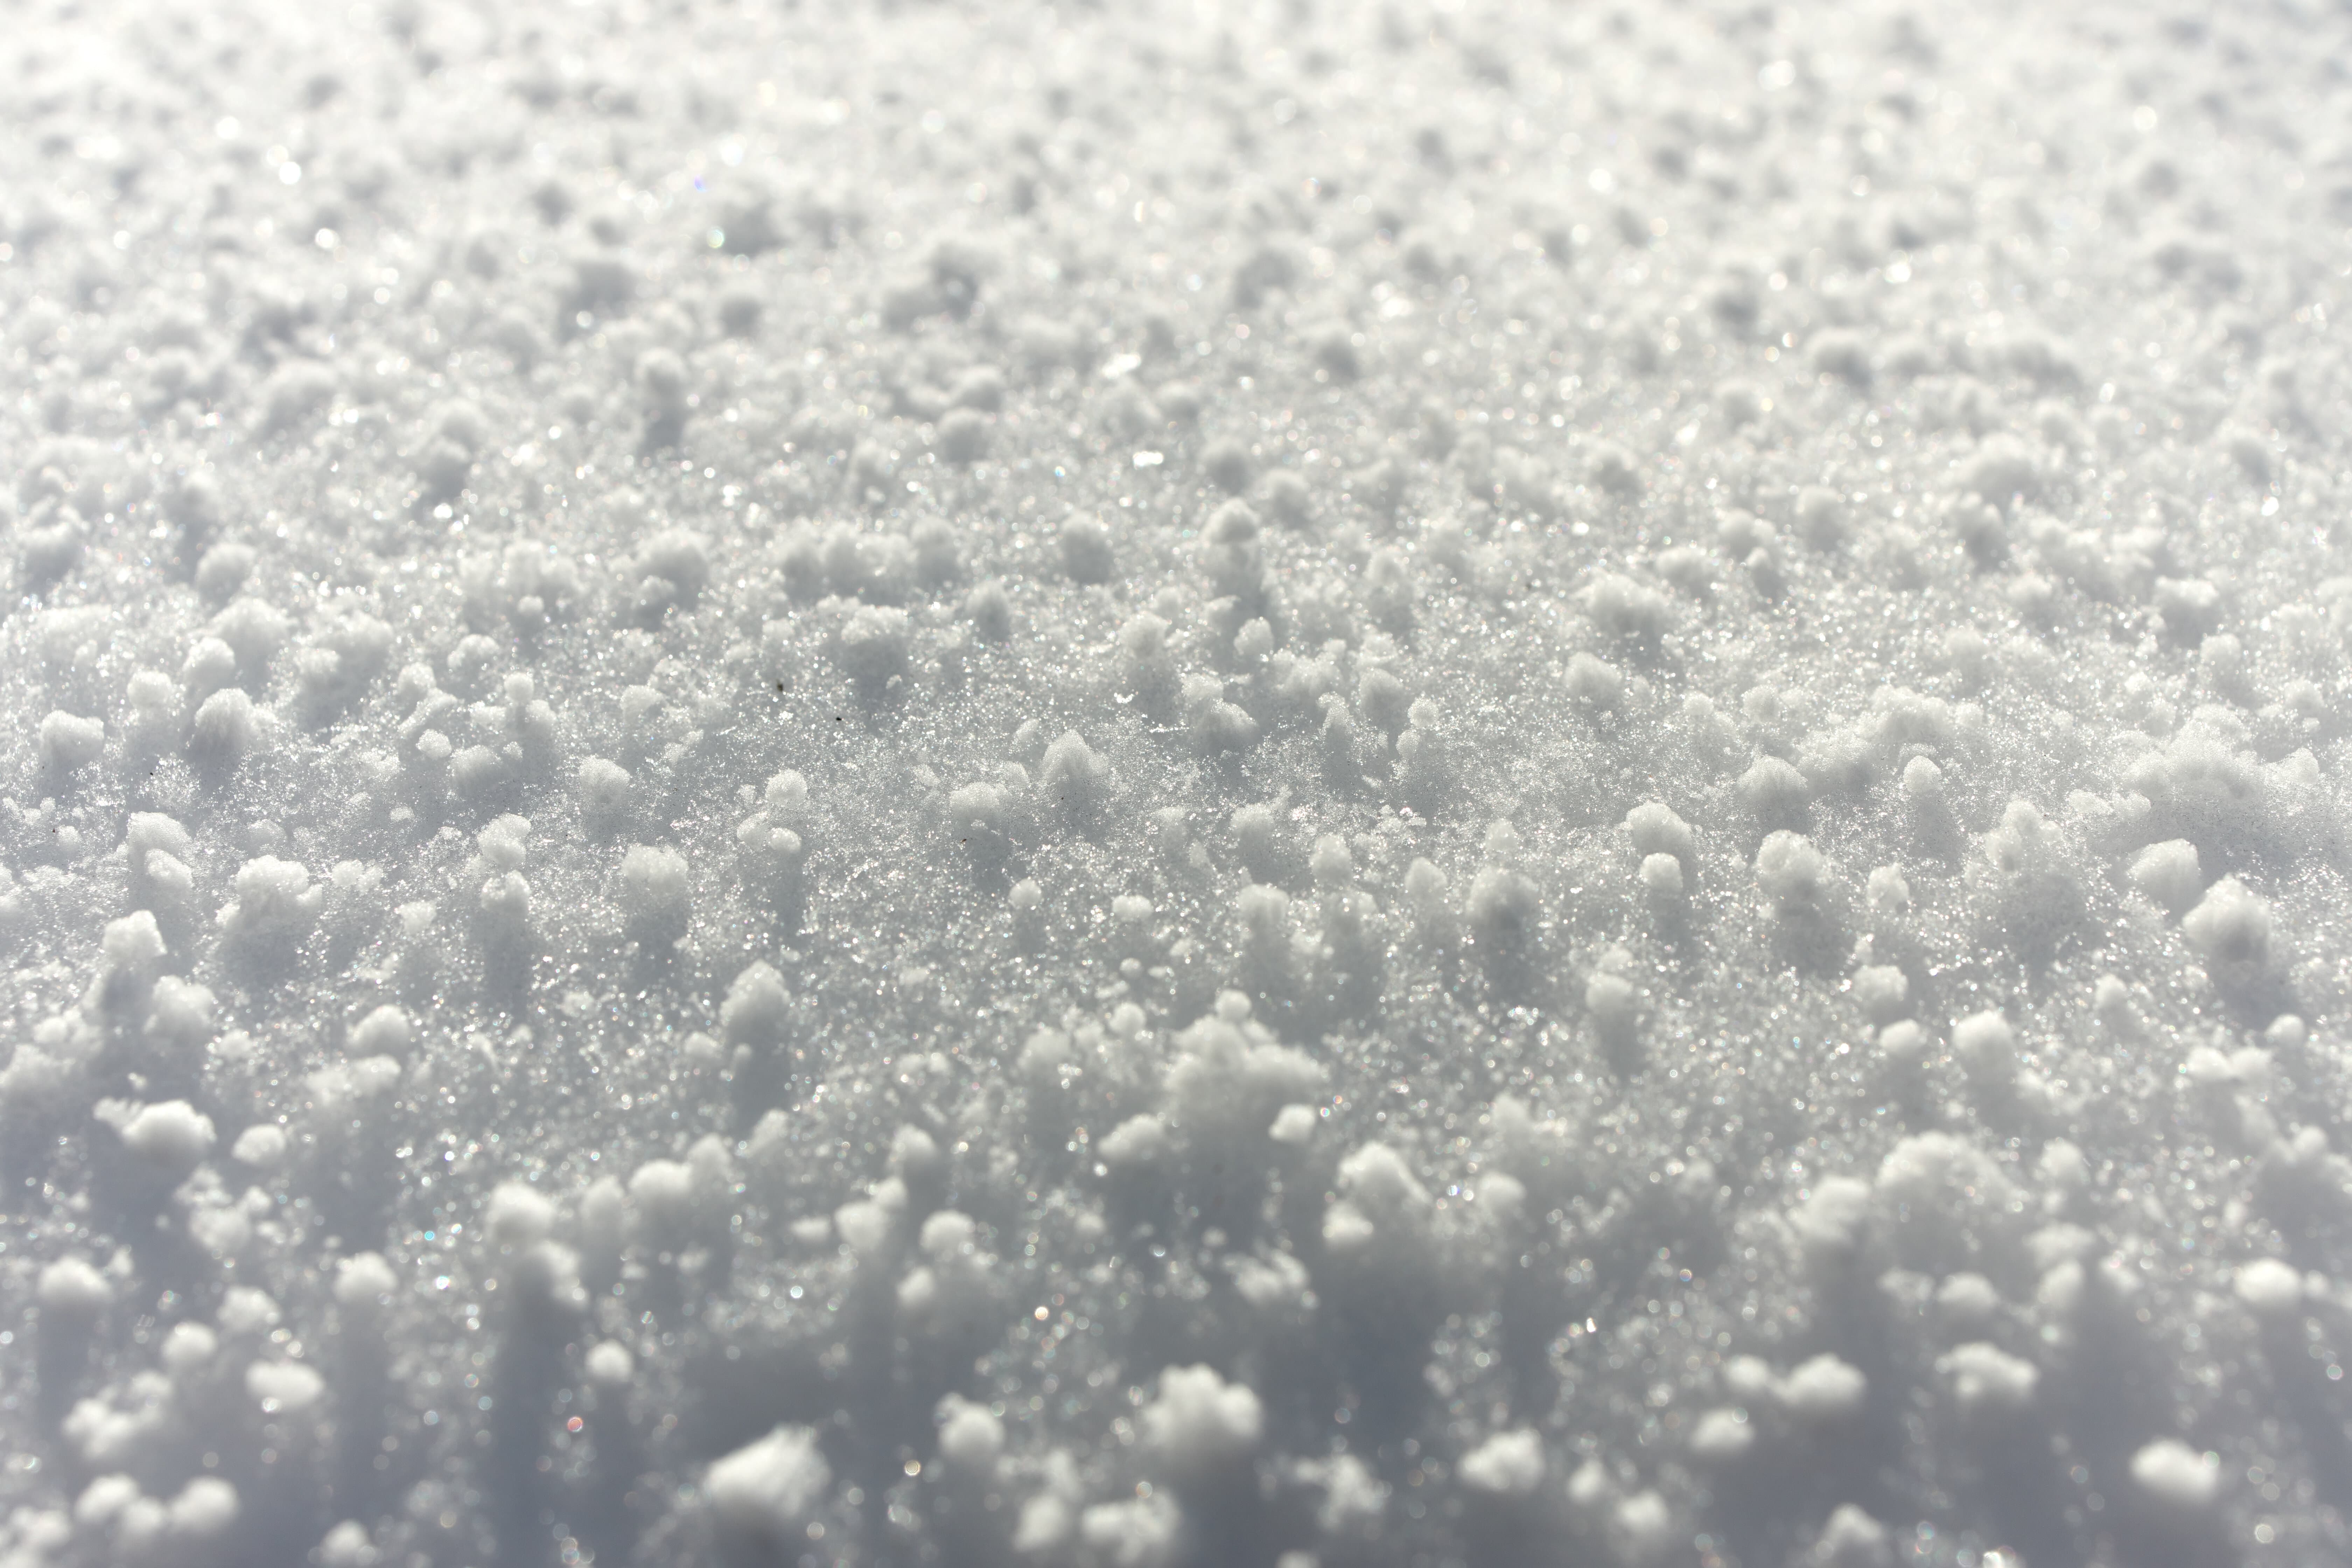 La neige roulée se forme lorsque des gouttelettes d'eau en surfusion&nbsp;rencontrent des cristaux de glace contenus dans des nuages d'averses et s'enroulent autour d'eux en se solidifiant.&nbsp;© Mark van Dam, Adobe Stock